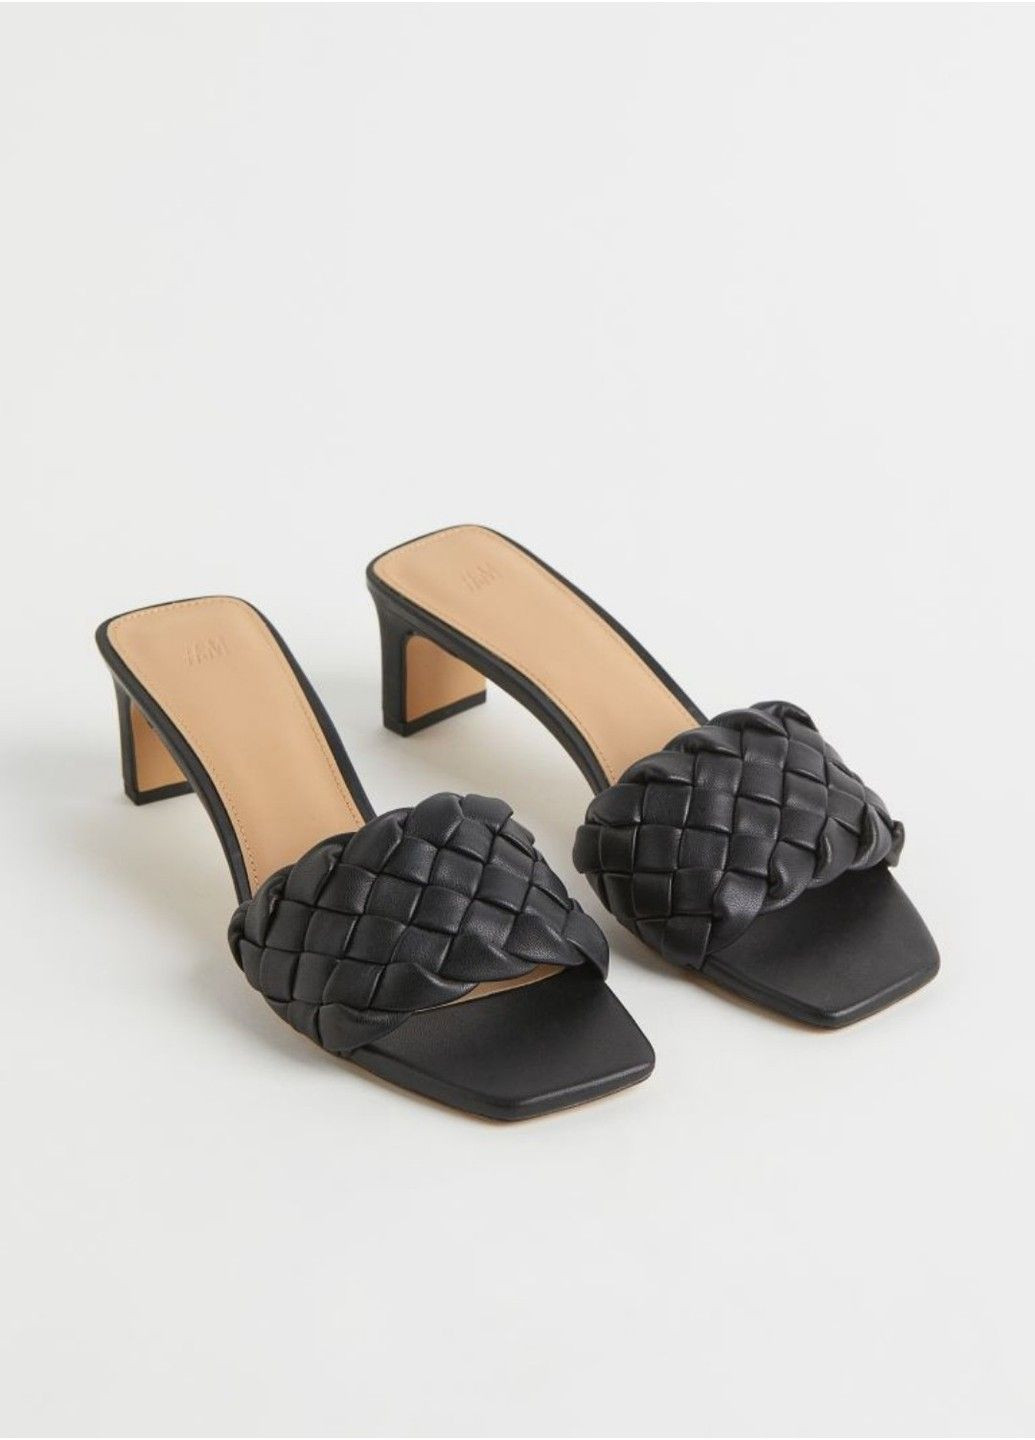 Черные женские босоножки слипоны на каблуке н&м (80015) 37 черные H&M